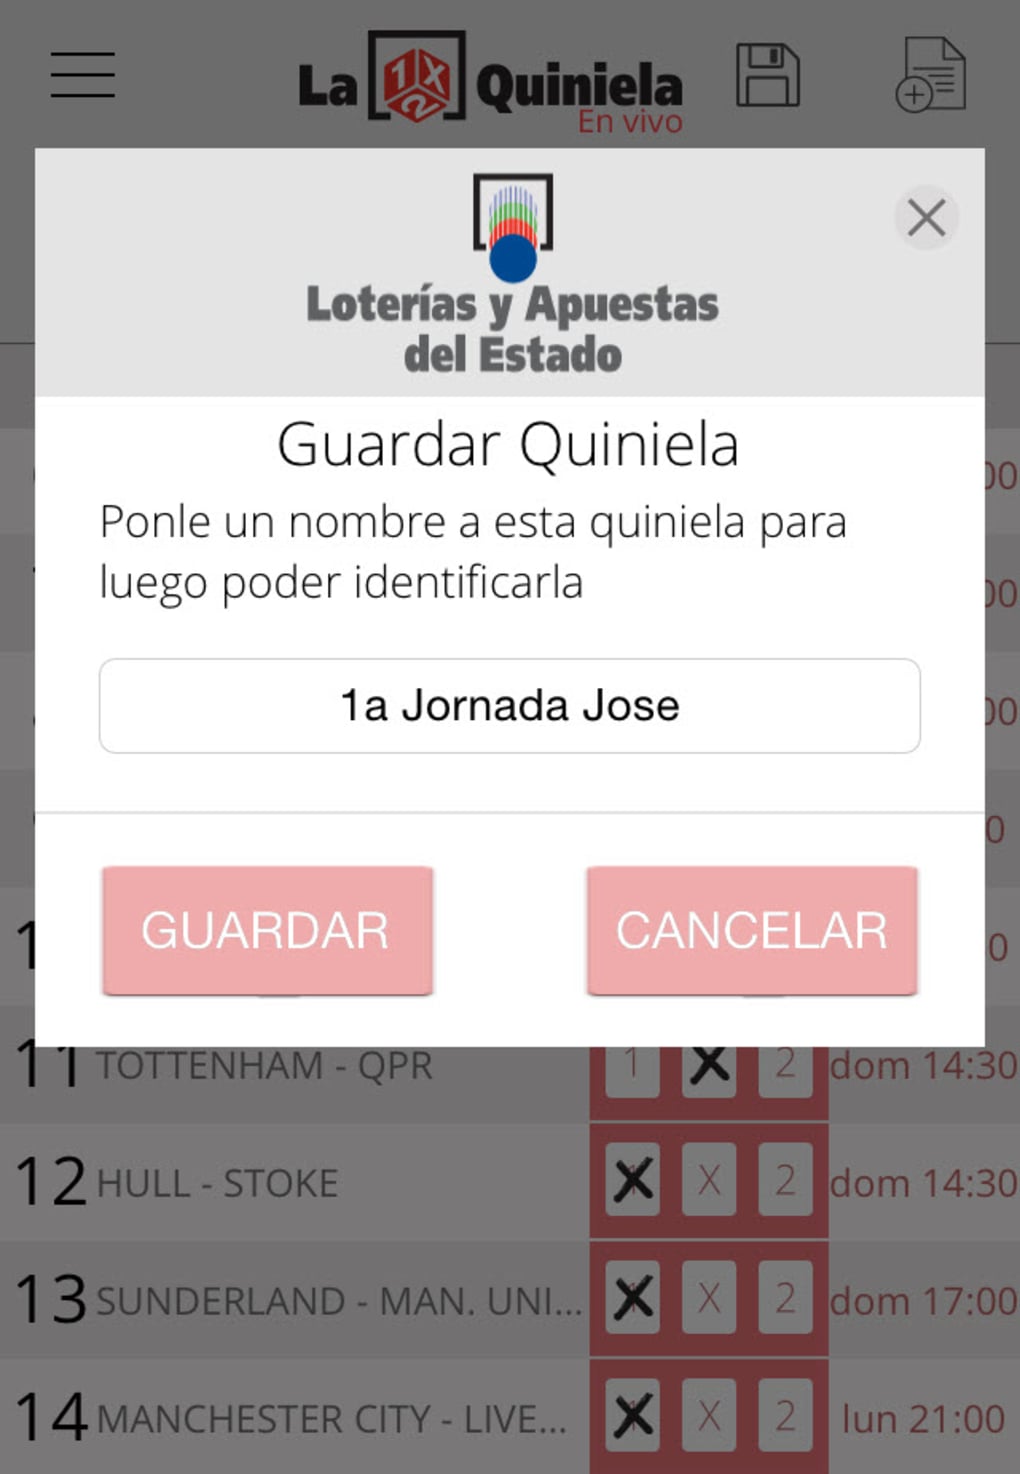 La Quiniela - App Oficial de LaLiga para Android - Descargar